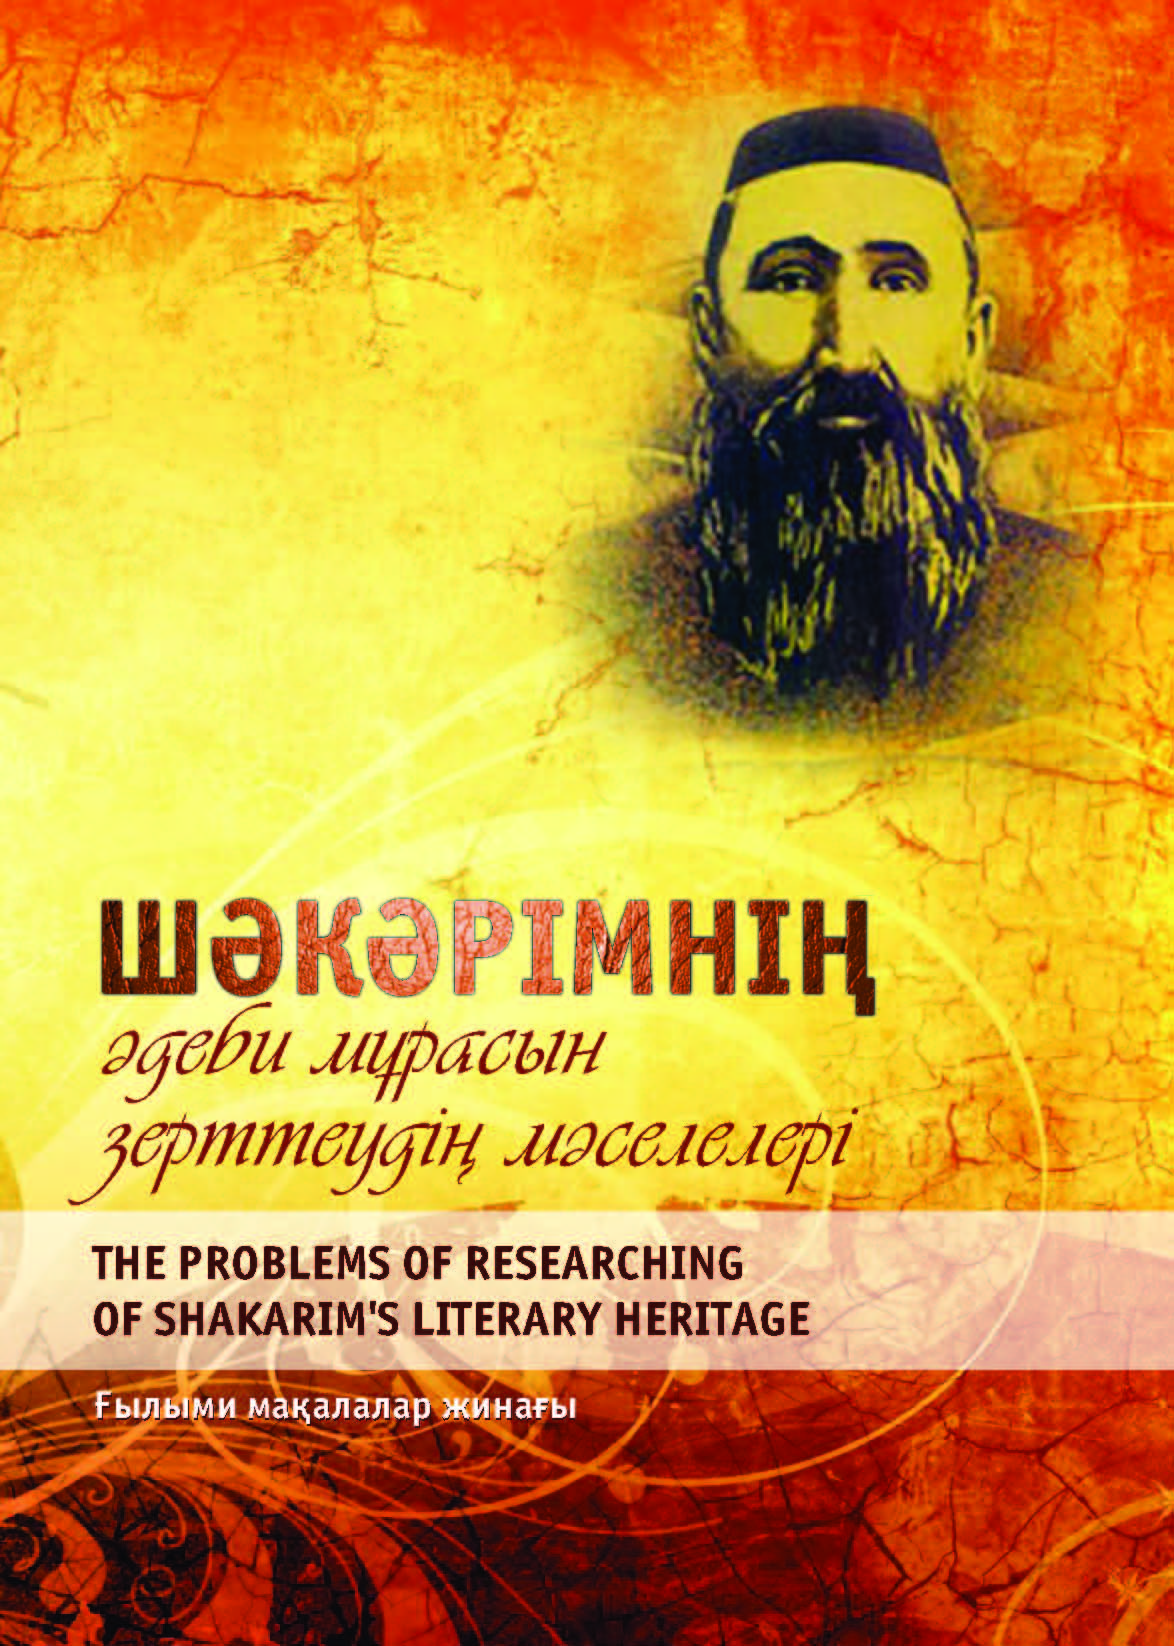 Шәкәрімнің әдеби мұрасын зерттеудің мәселелері. The problems of researching of Shakarim’s literary heritage: ғылыми мақалалар жинағы – 156 б.